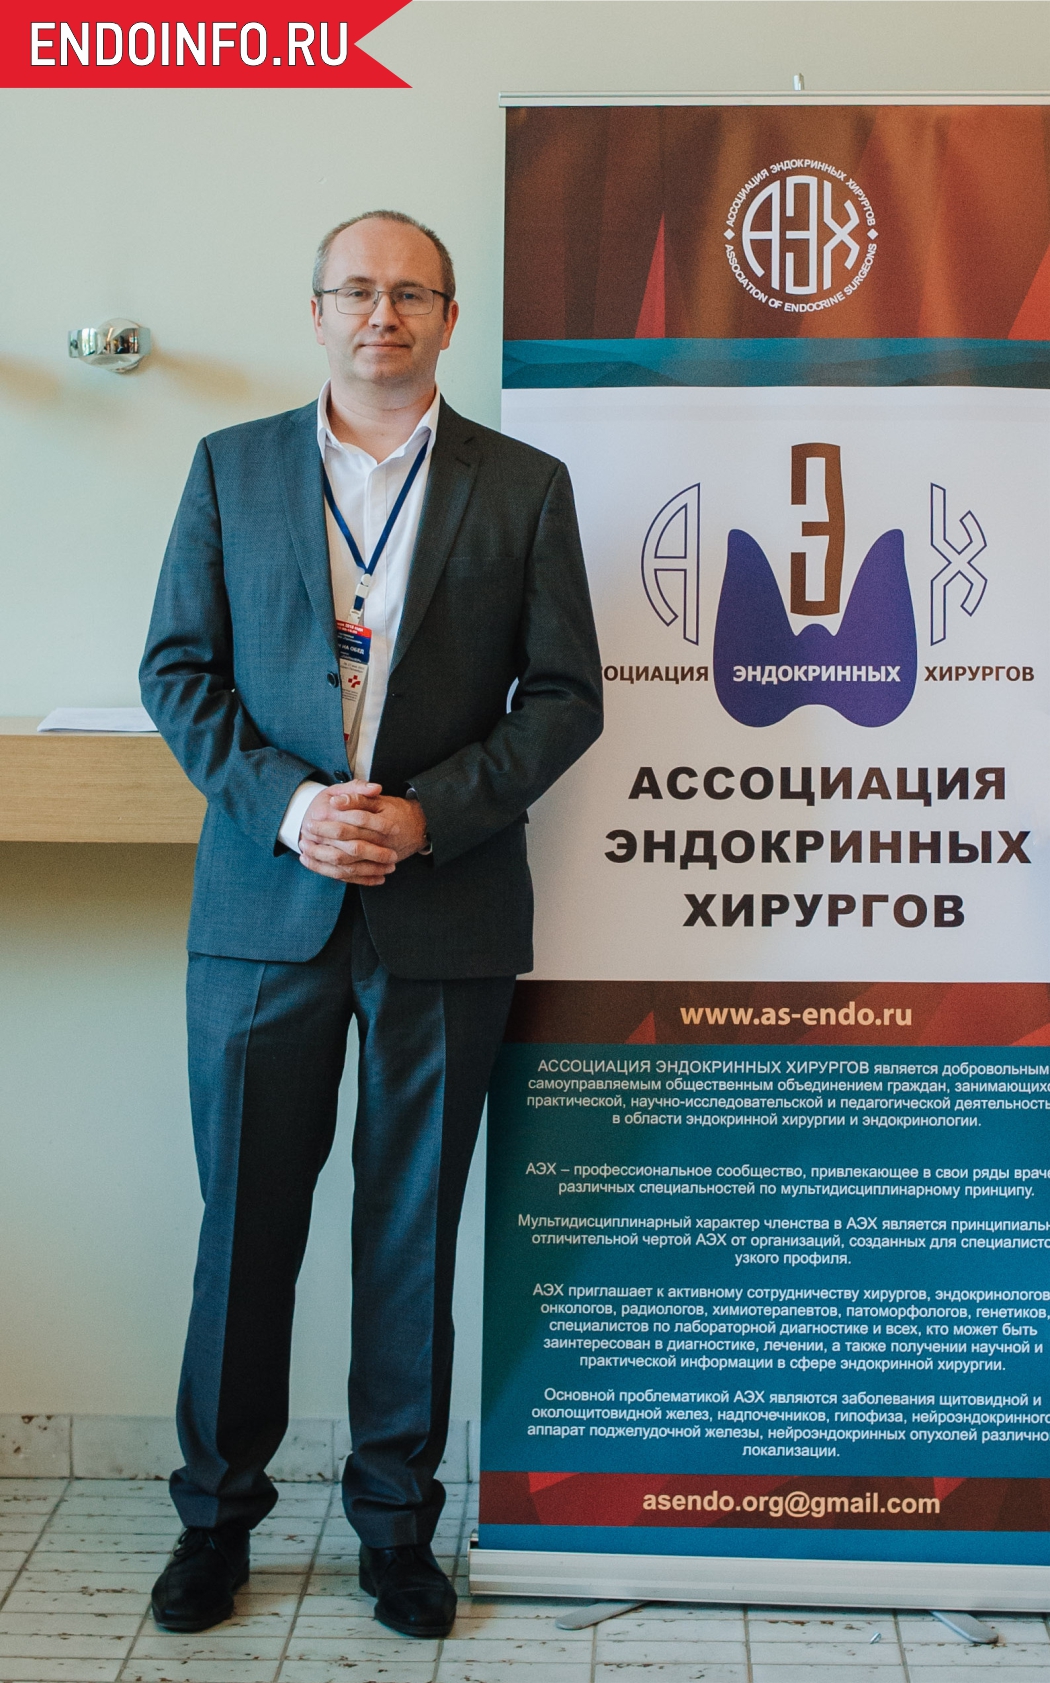 Слепцов Илья Валерьевич, президент Ассоциации эндокринных хирургов